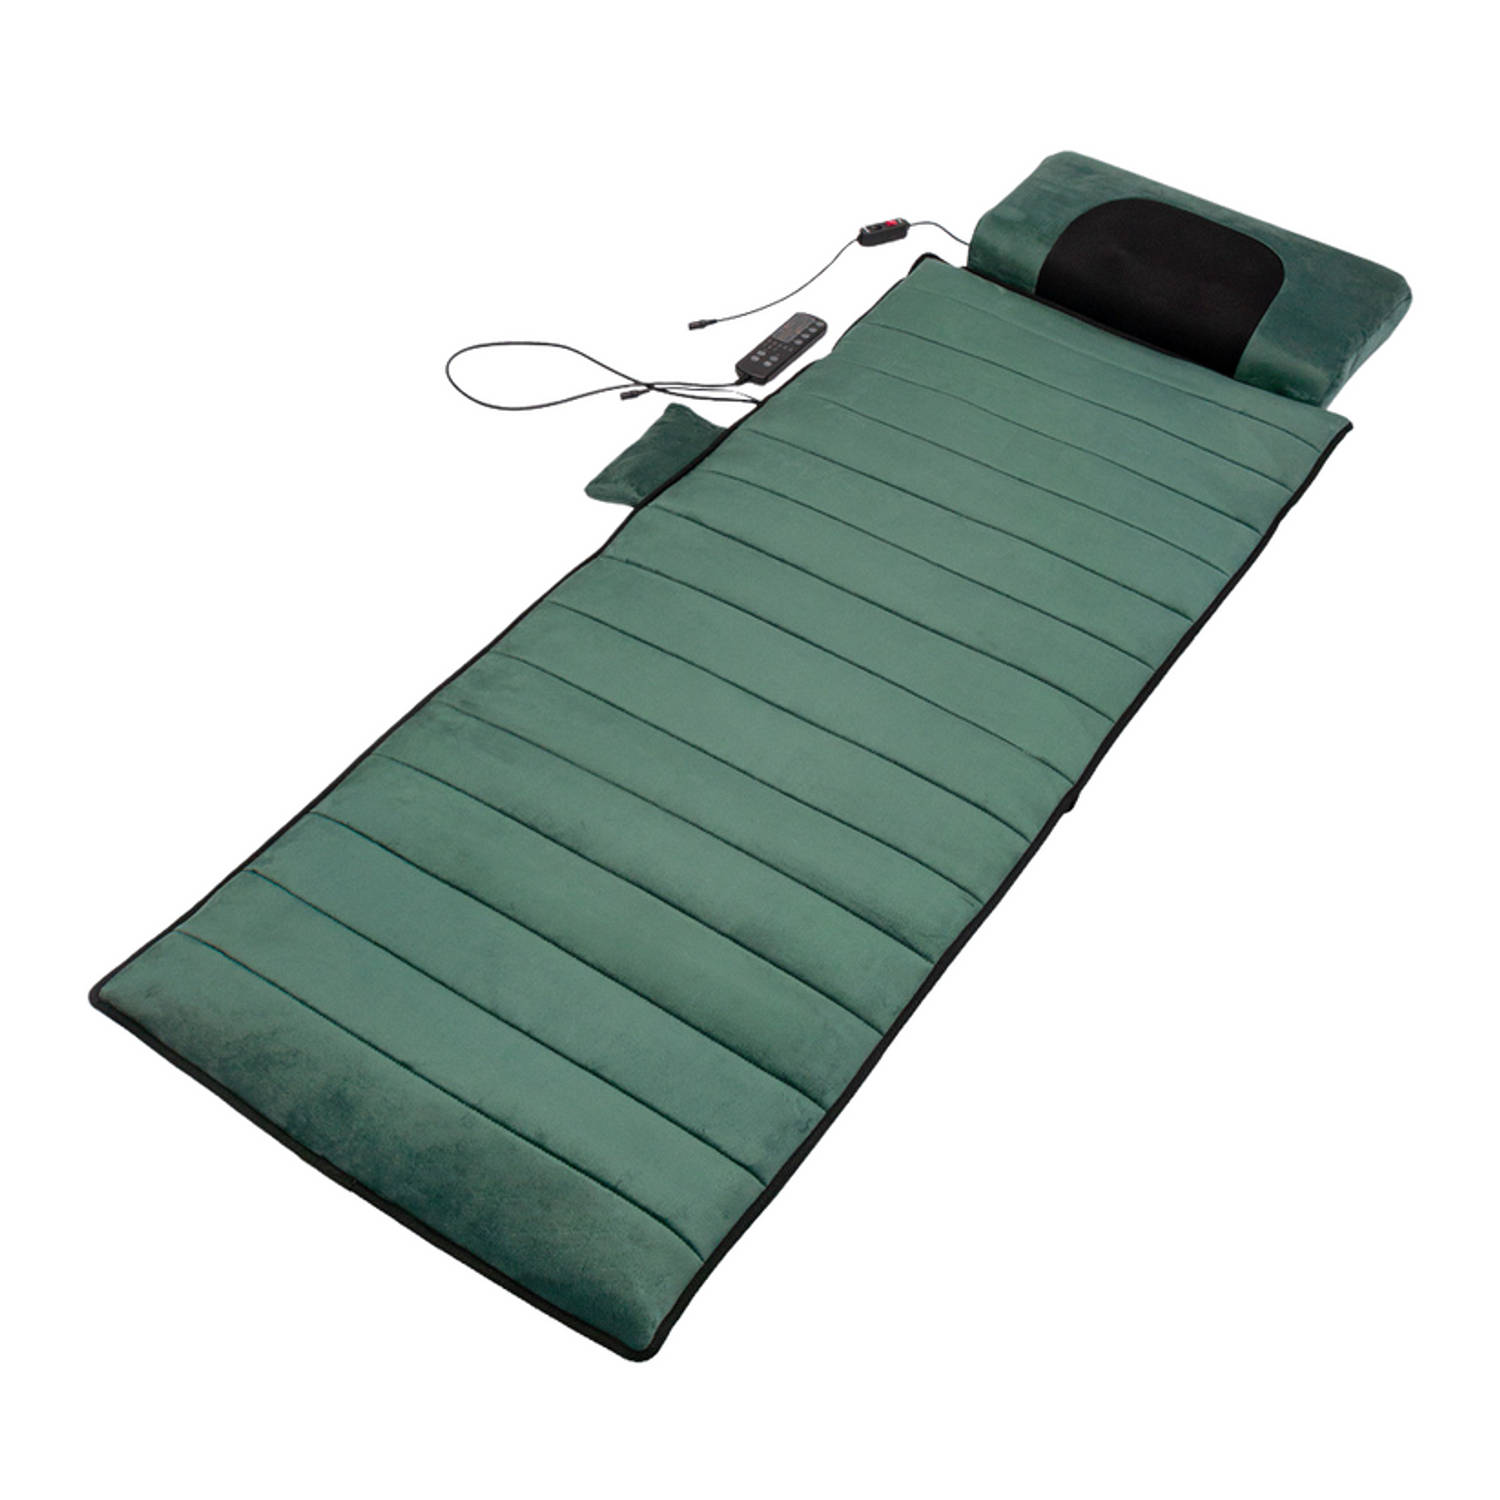 Felman Remedy Massage System Incl. Gratis Cover- Massagekussen - Shiatsu - Warmtetherapie - 170 x 55 cm